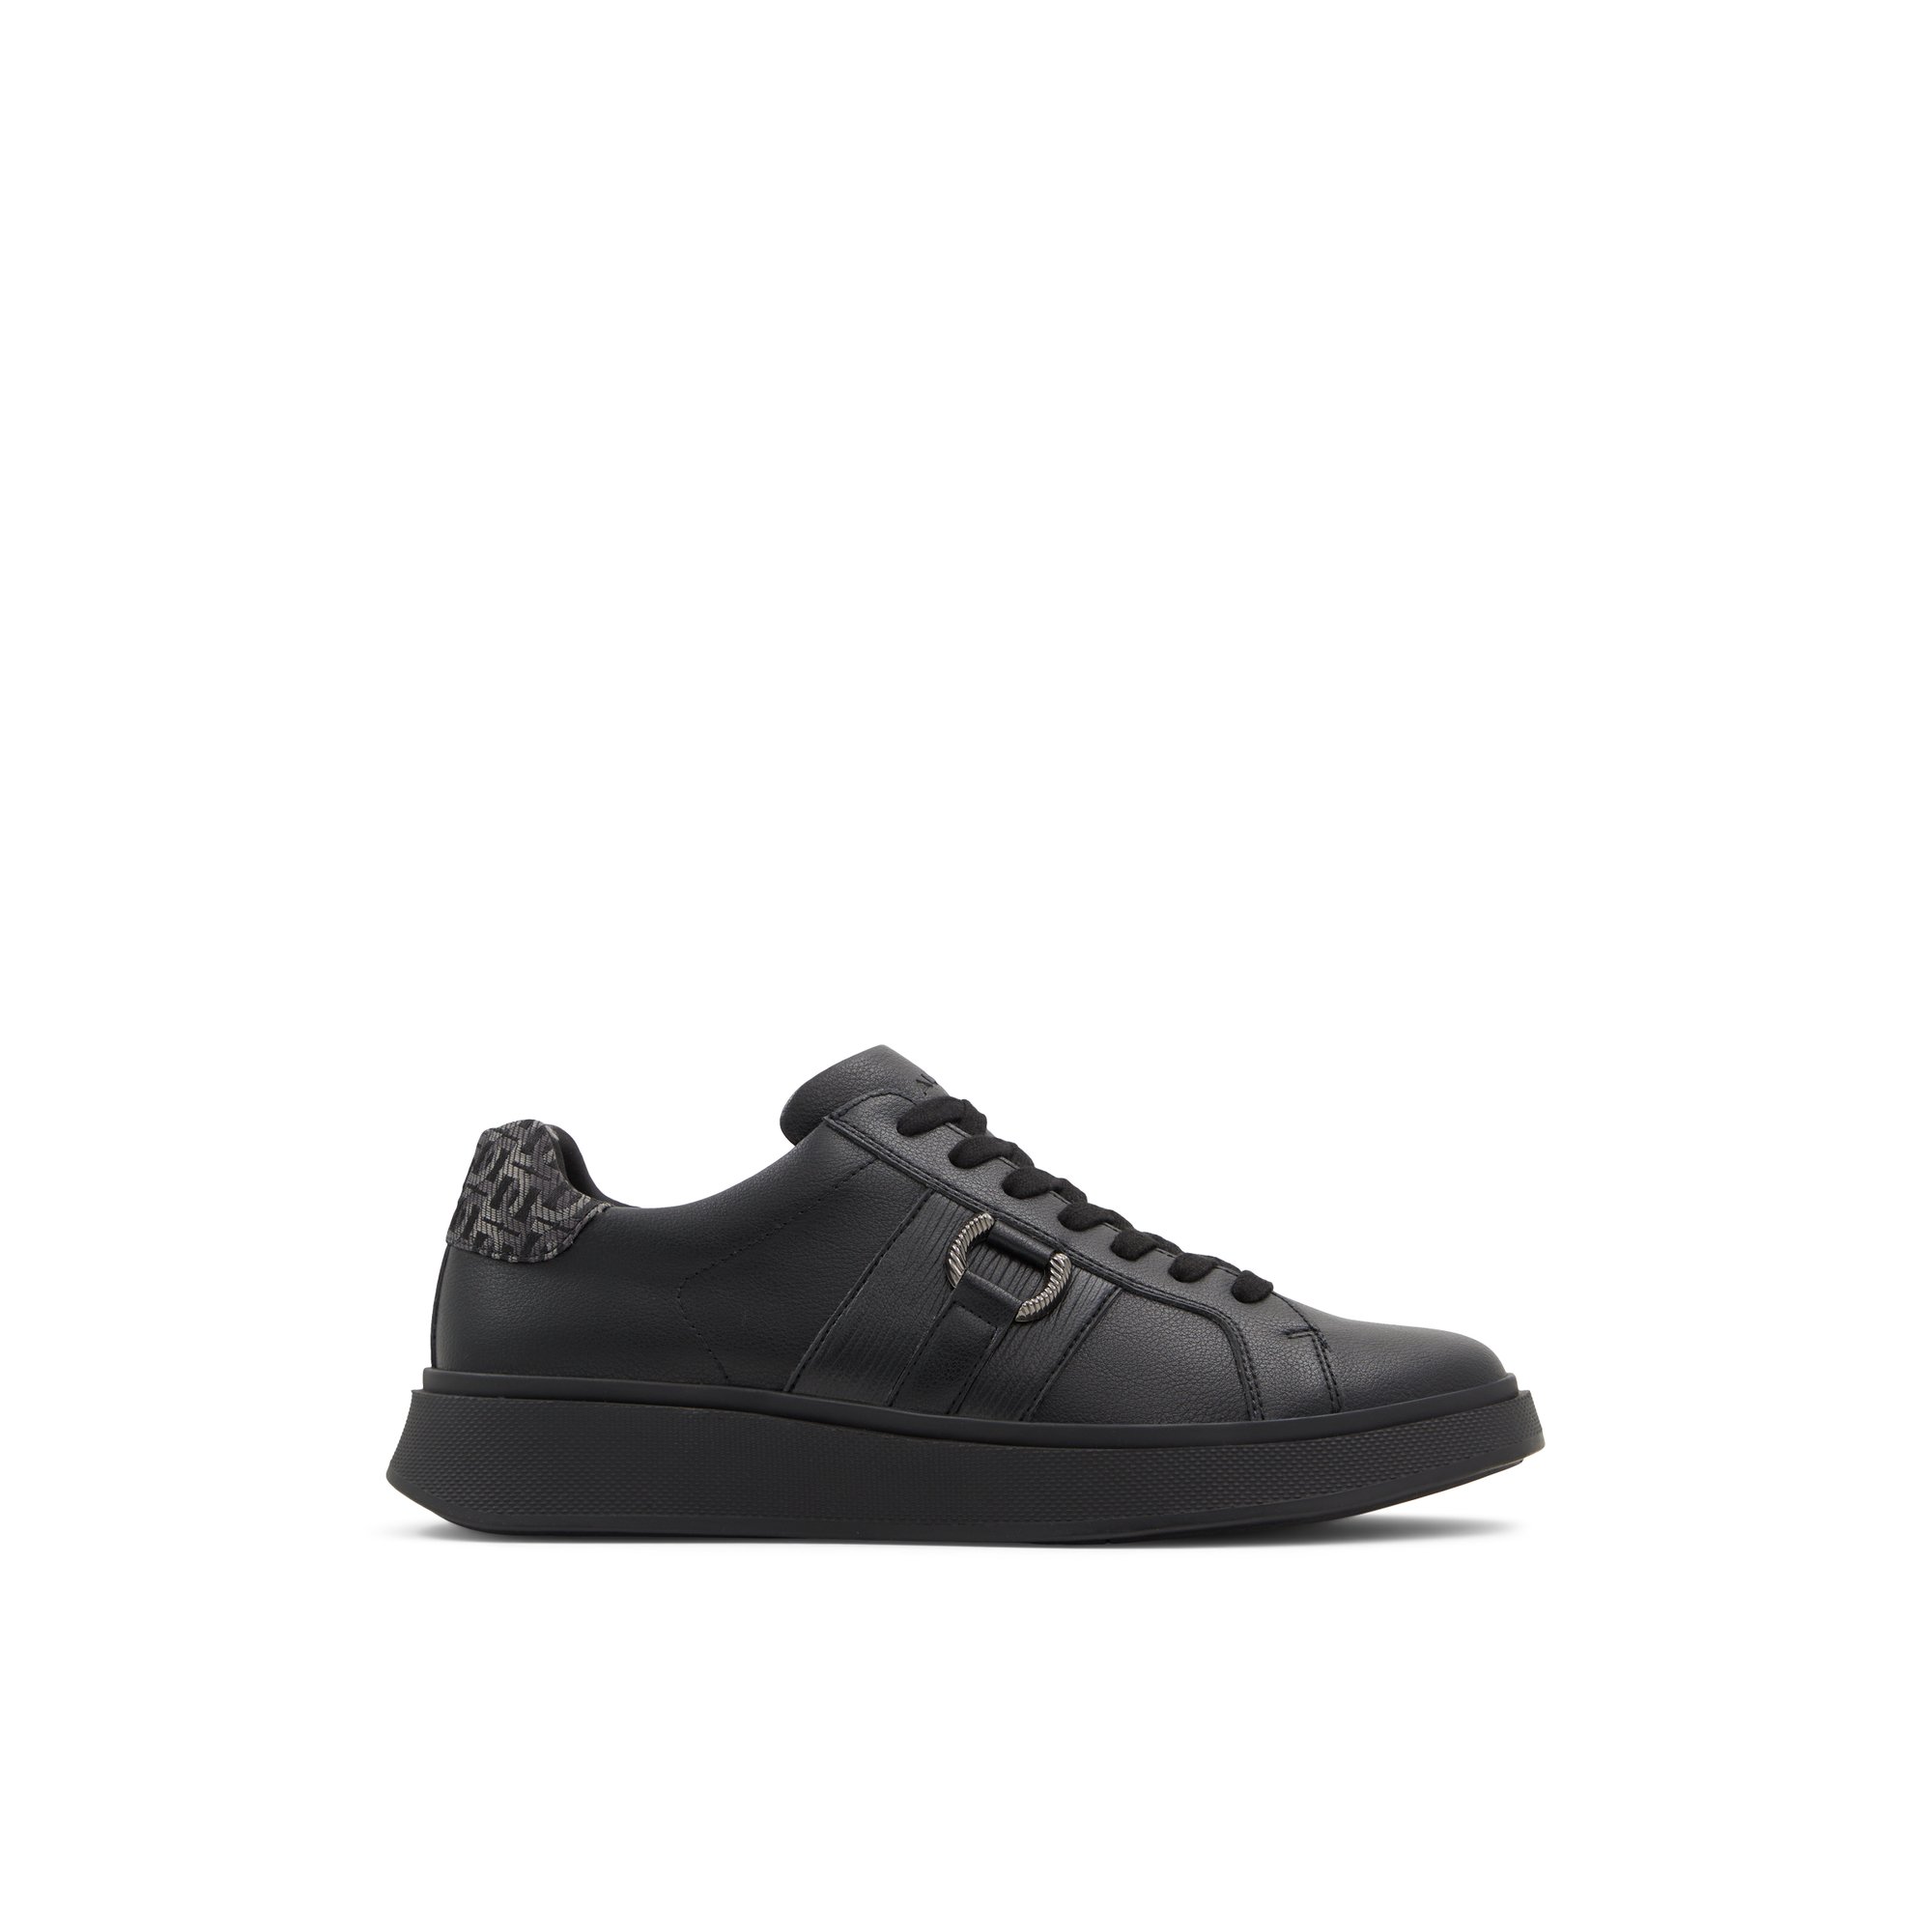 ALDO Valdes - Men's Sneaker - Black